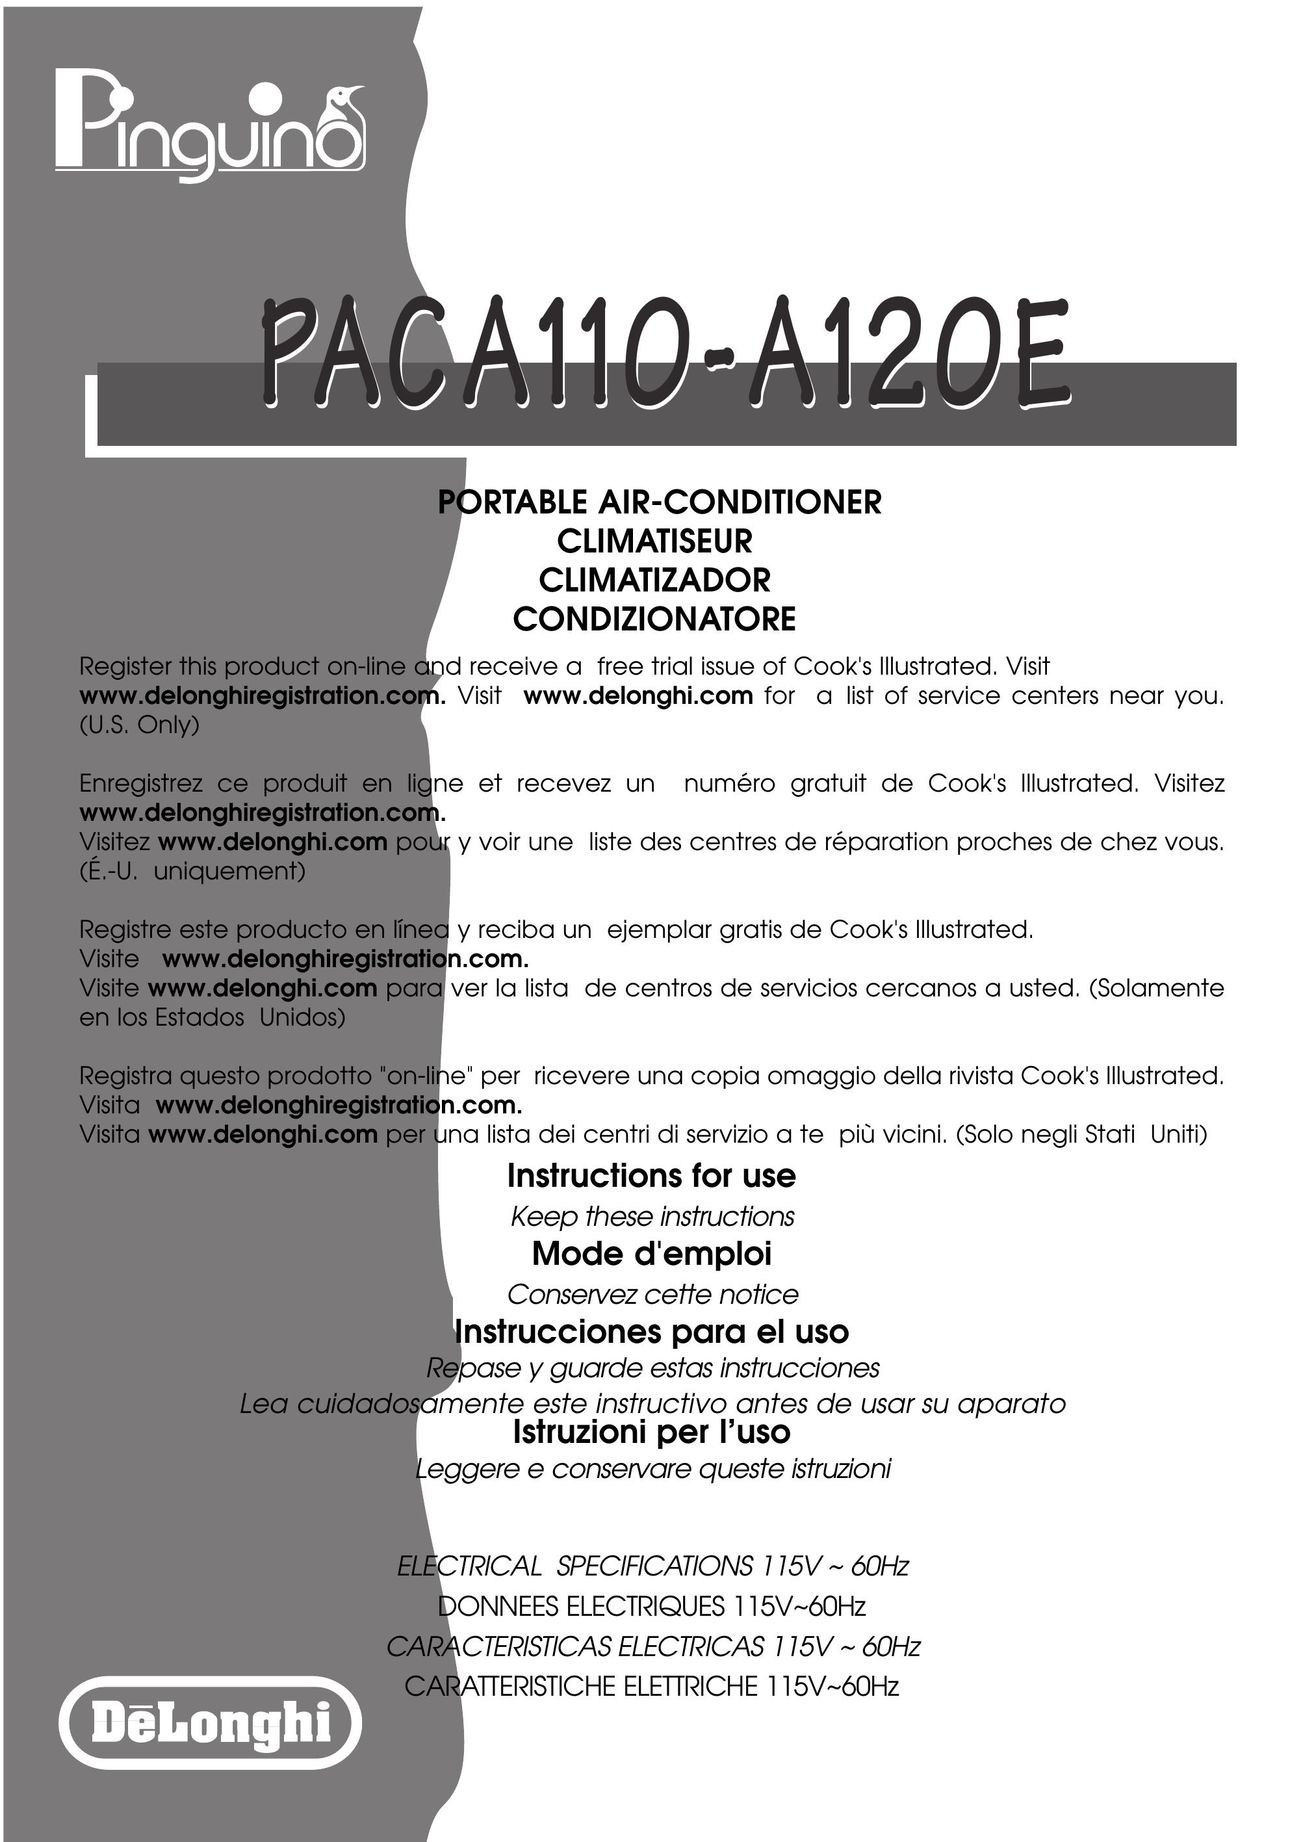 DeLonghi PACA110-A120E Air Conditioner User Manual